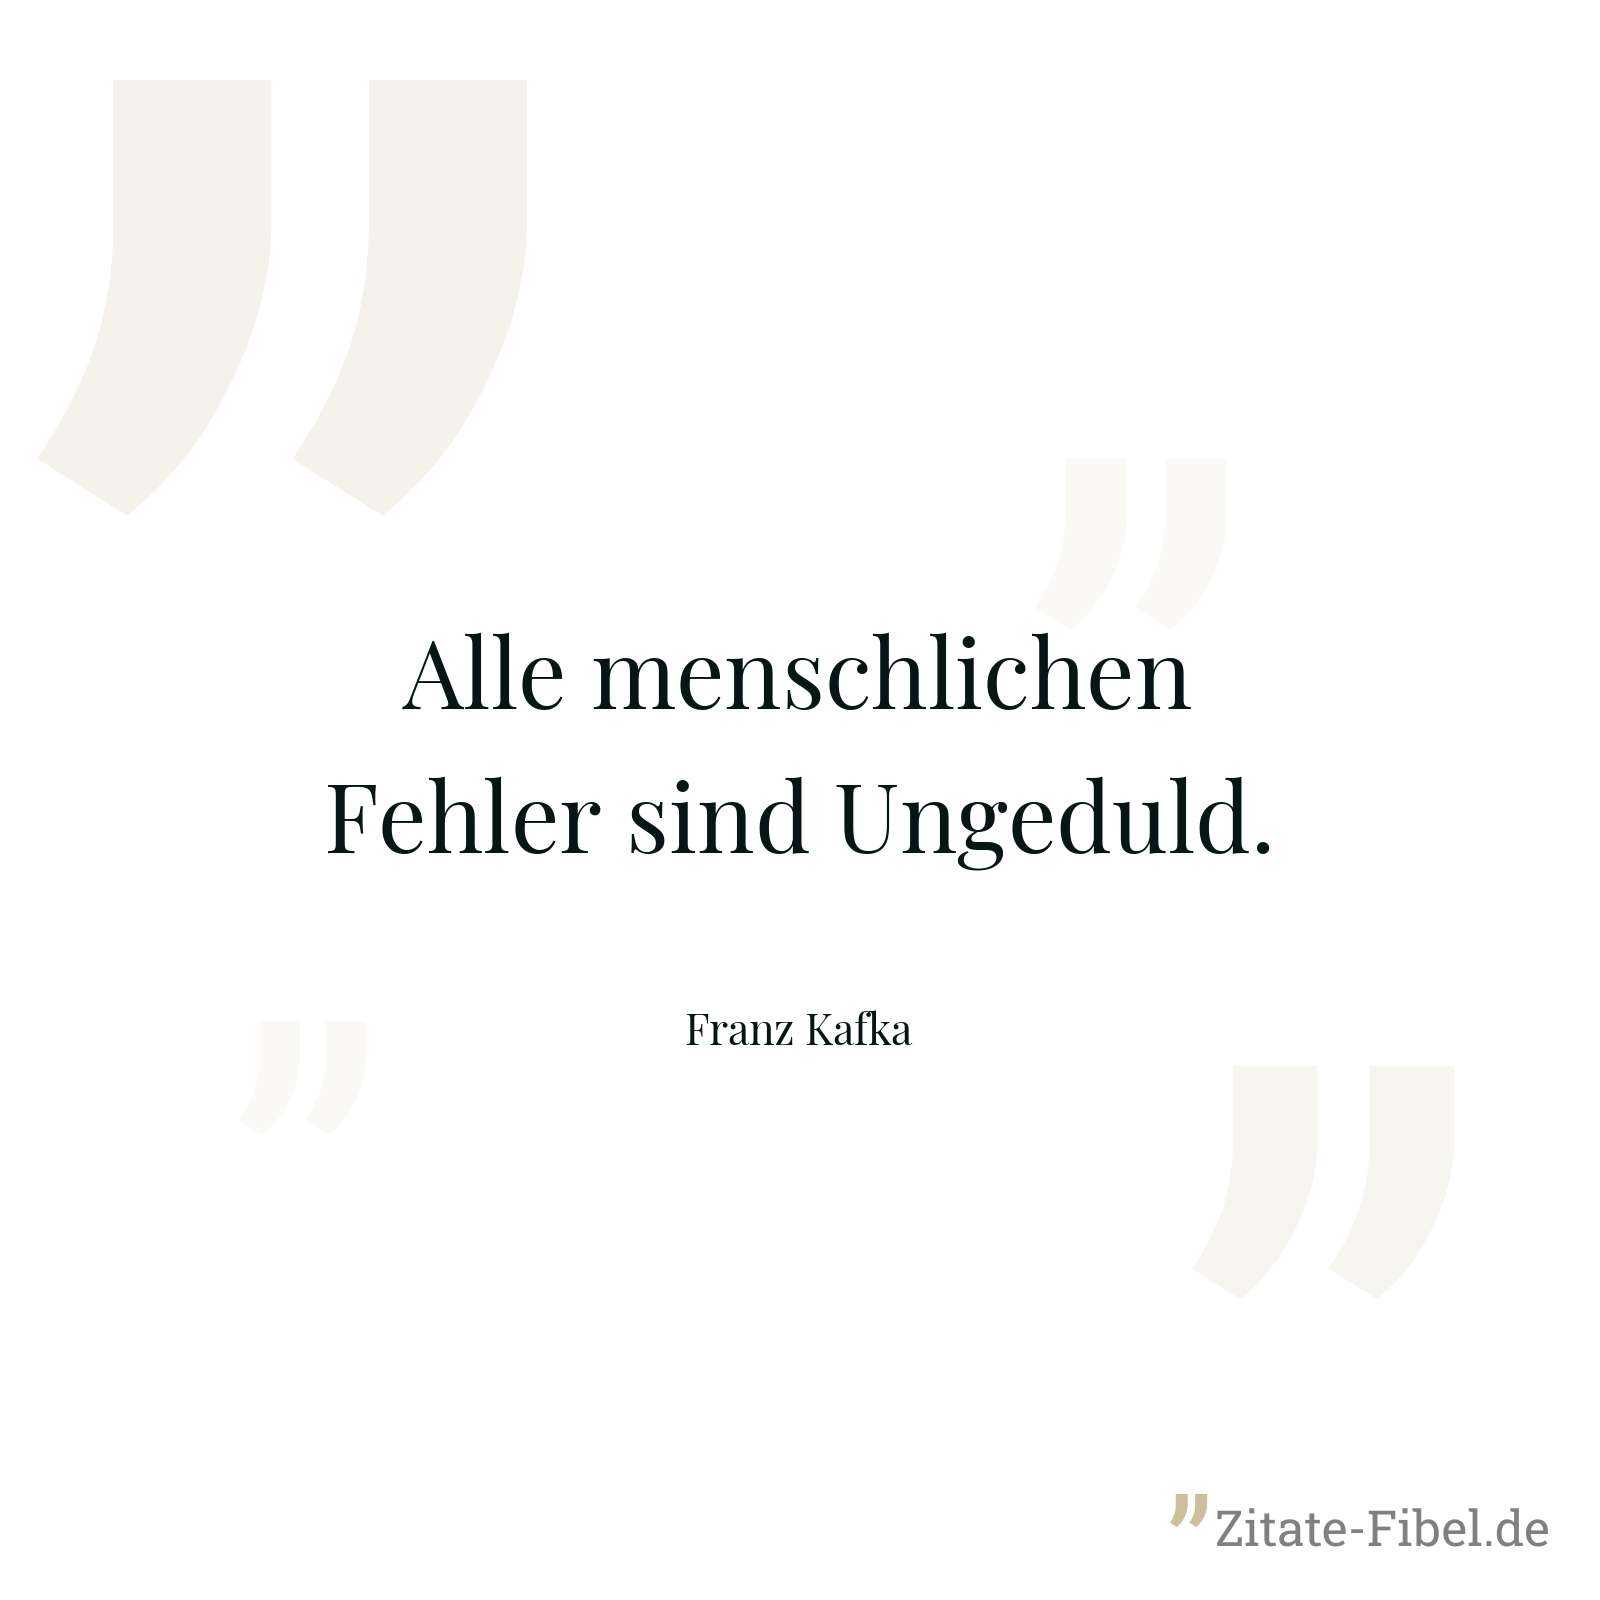 Alle menschlichen Fehler sind Ungeduld. - Franz Kafka